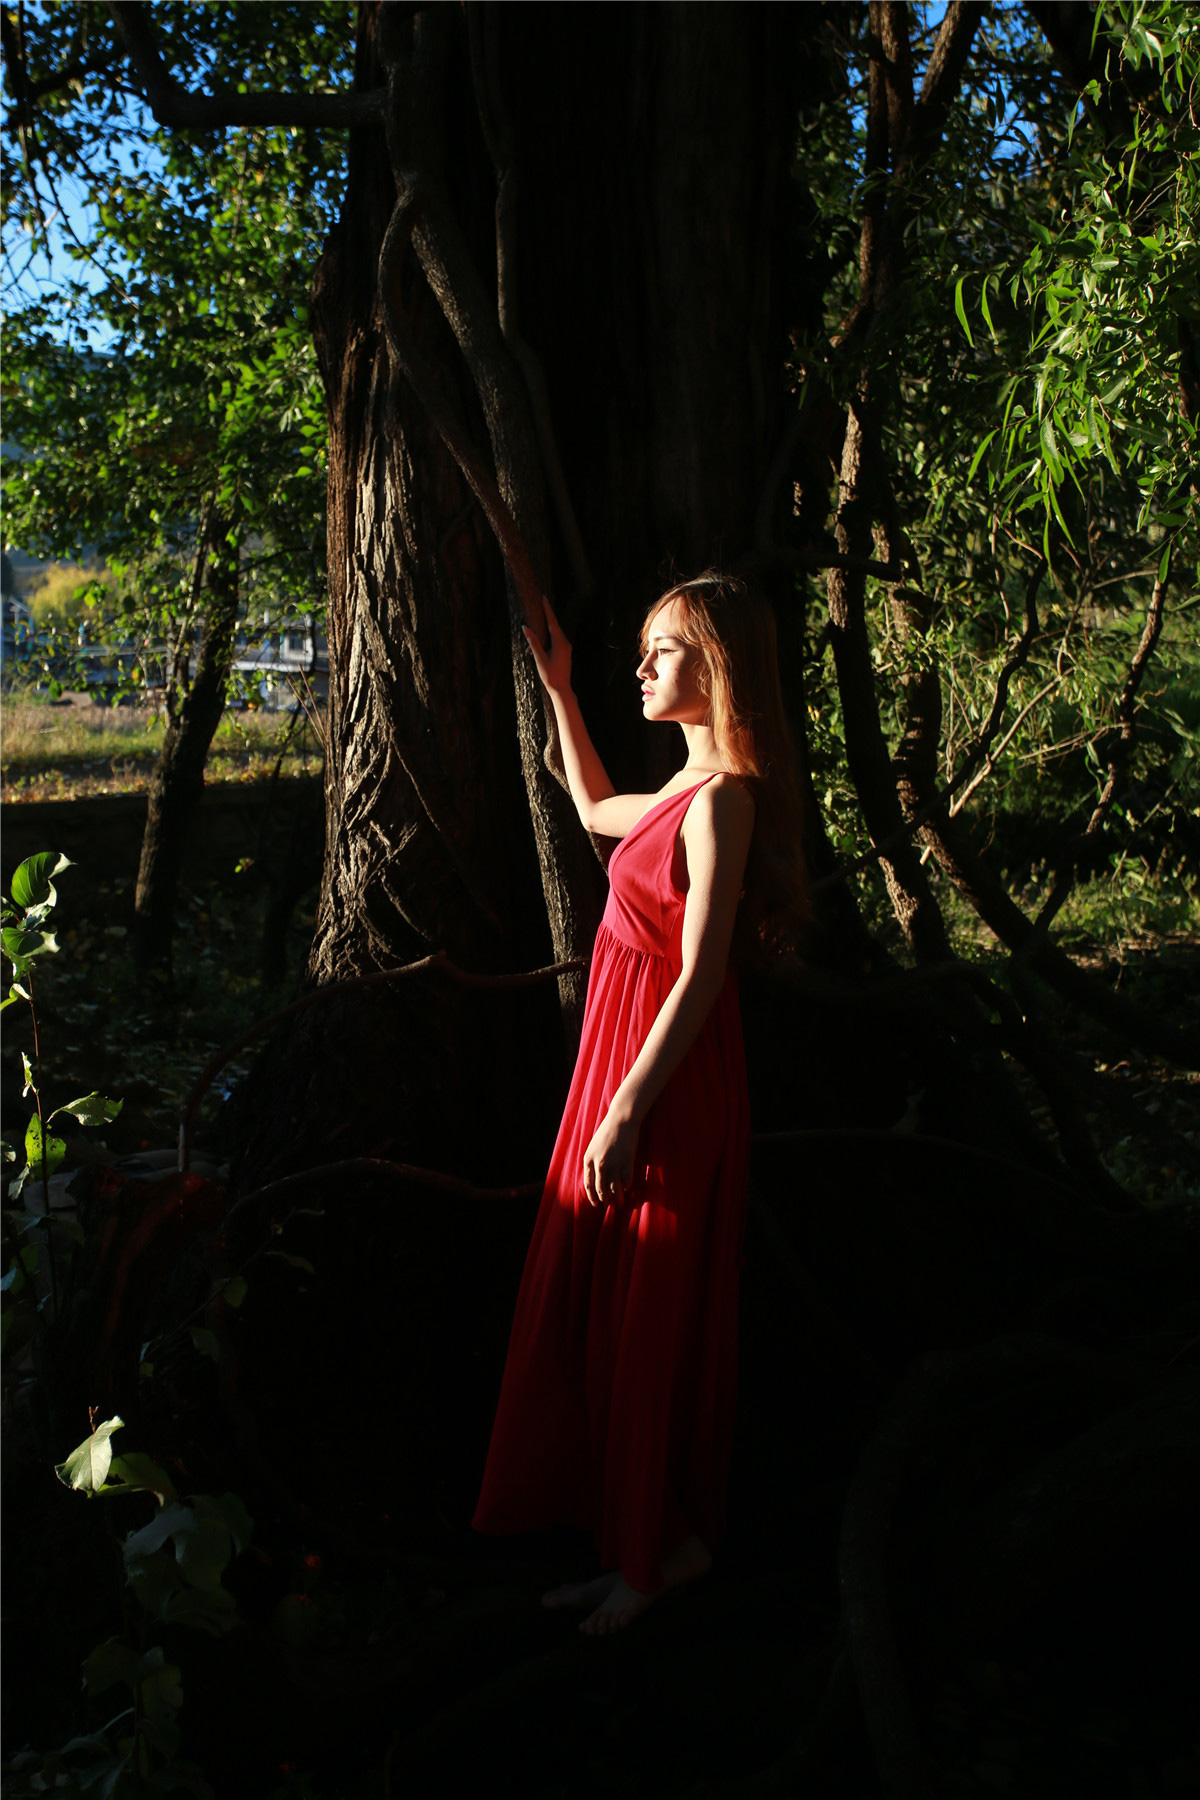 长裙美女森系写真 气质像原始森林般自然纯净